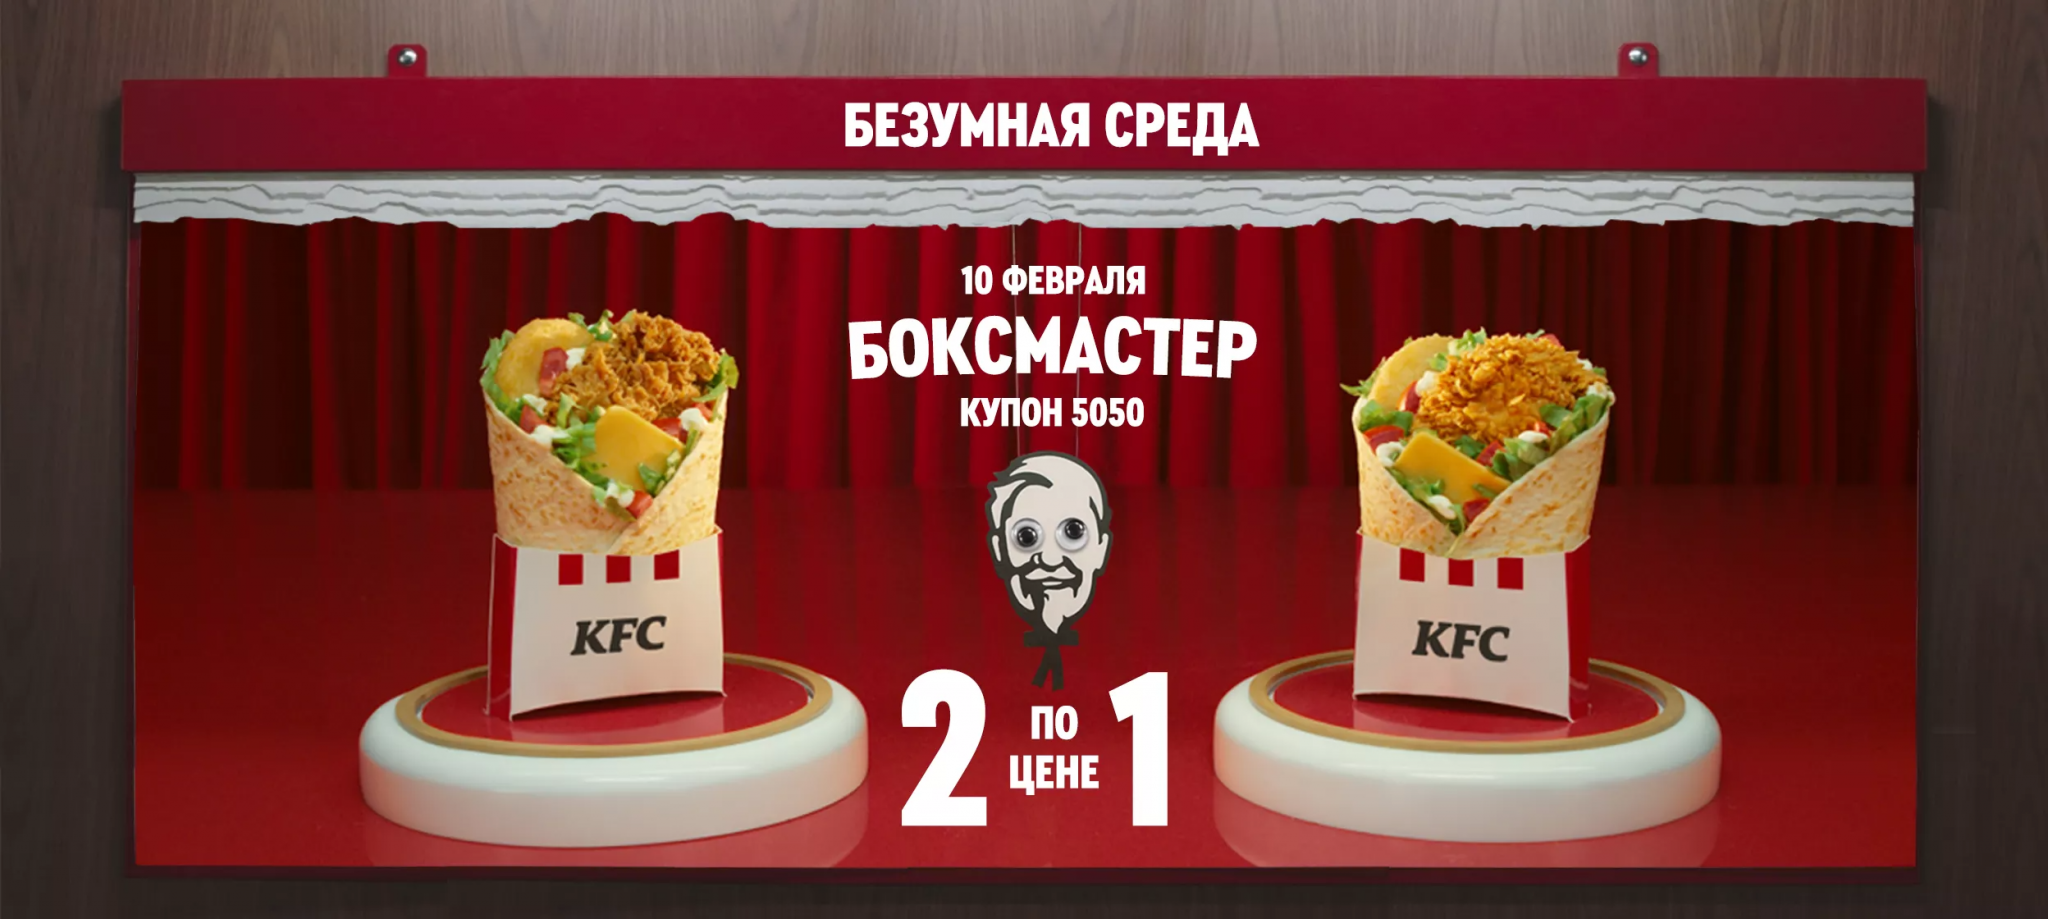 Kfc первый заказ через приложение. Боксмастер KFC. KFC среда купон.